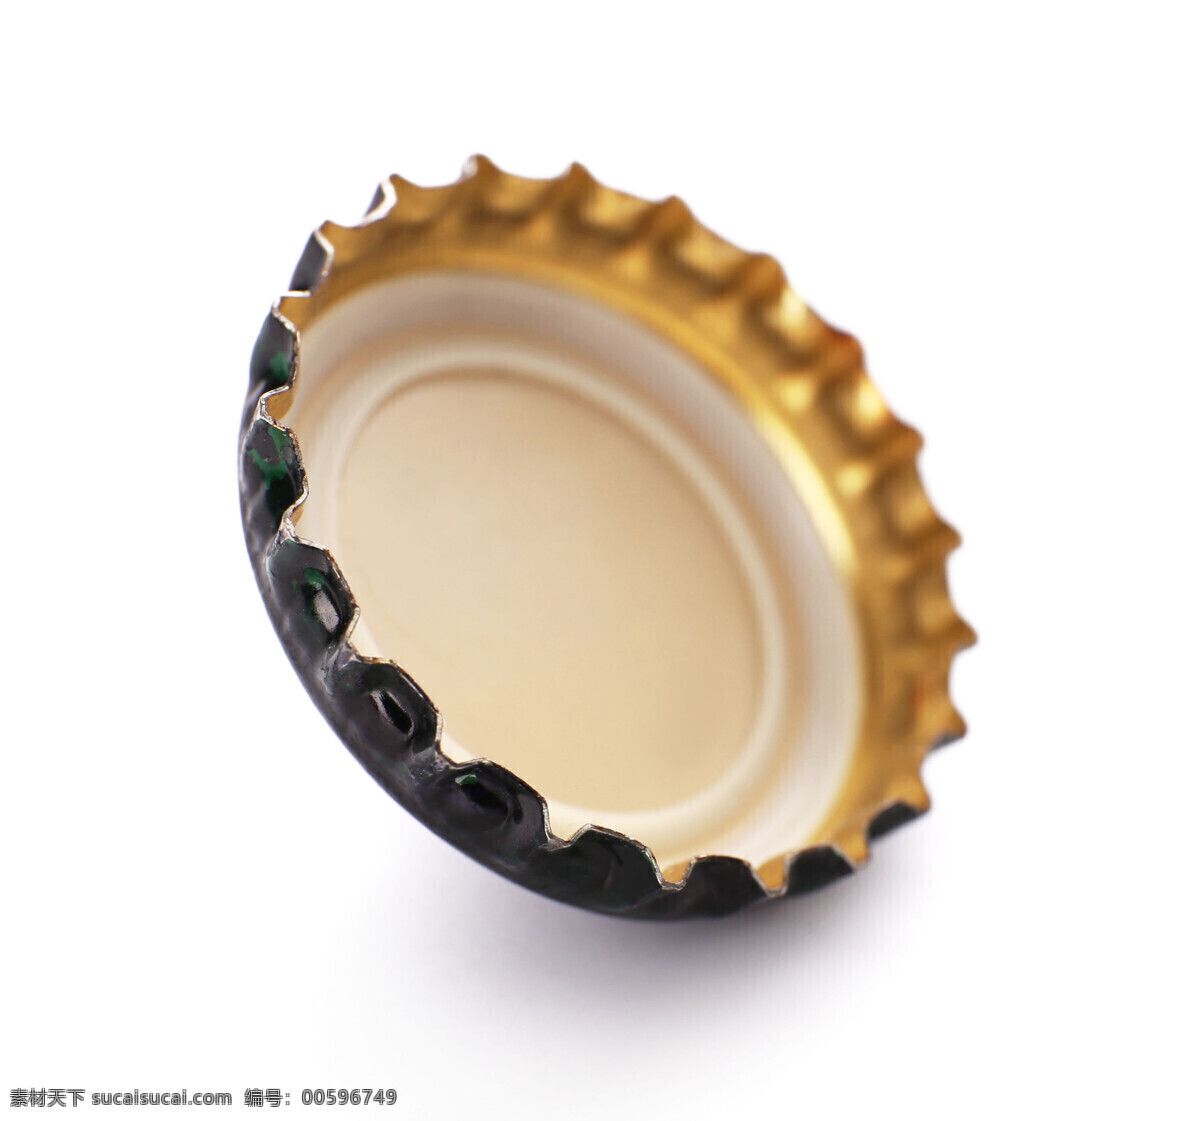 精致 啤酒 瓶盖 高清 深色 金属 密封 高清图片 侧立 金色帽 生活百科 生活素材